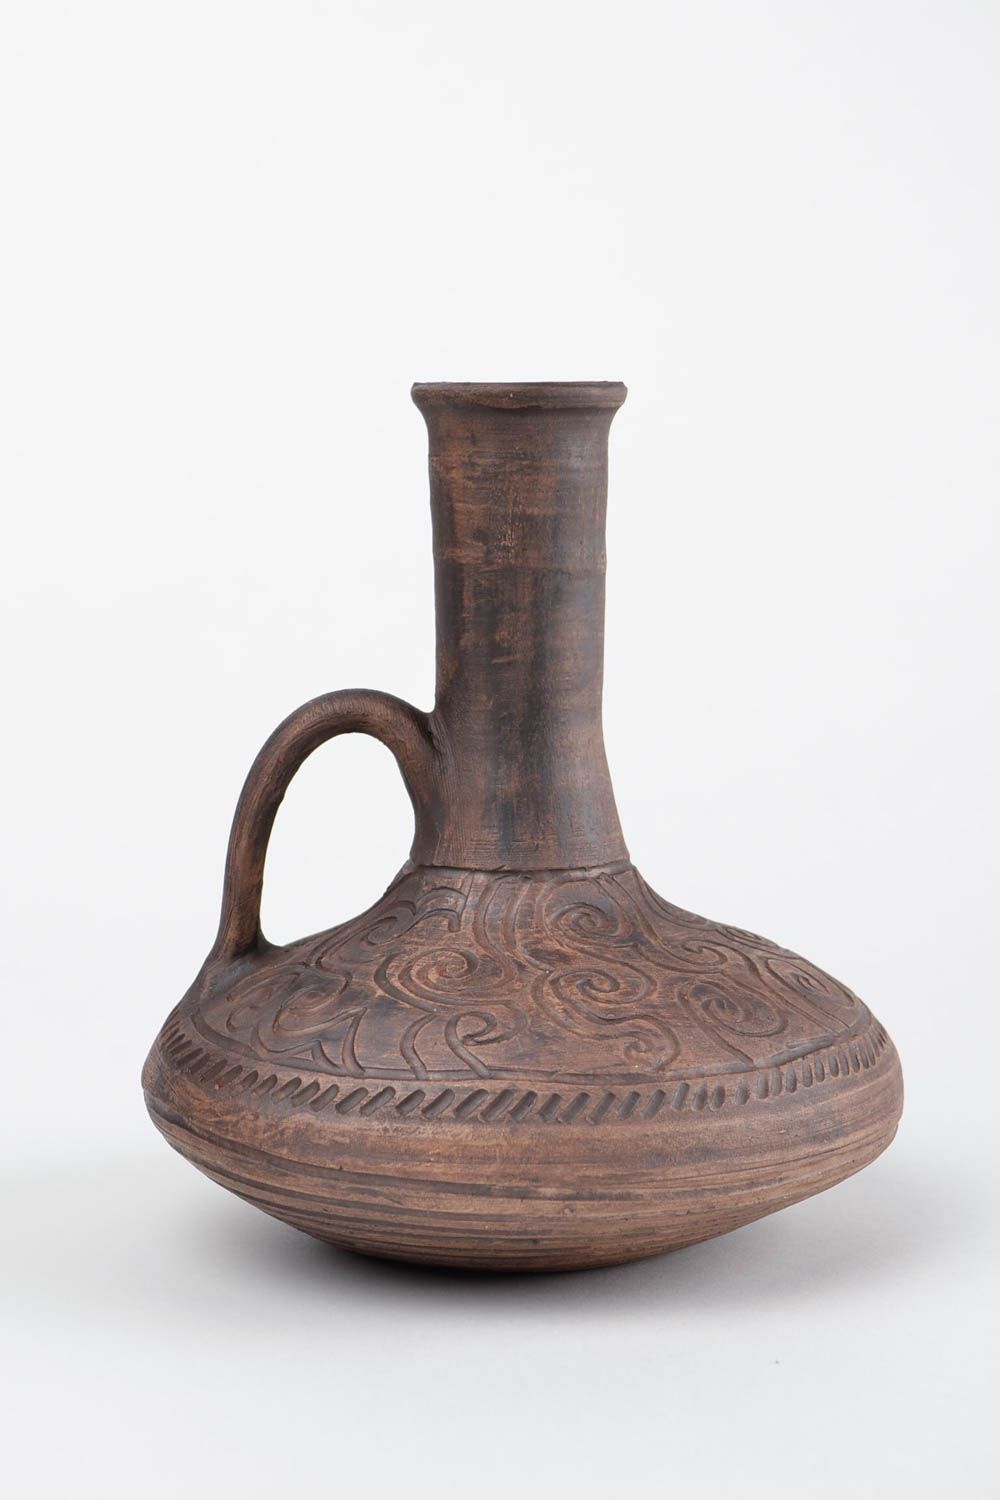 15 oz ceramic wine carafe in Arabian style 1,7 lb photo 3